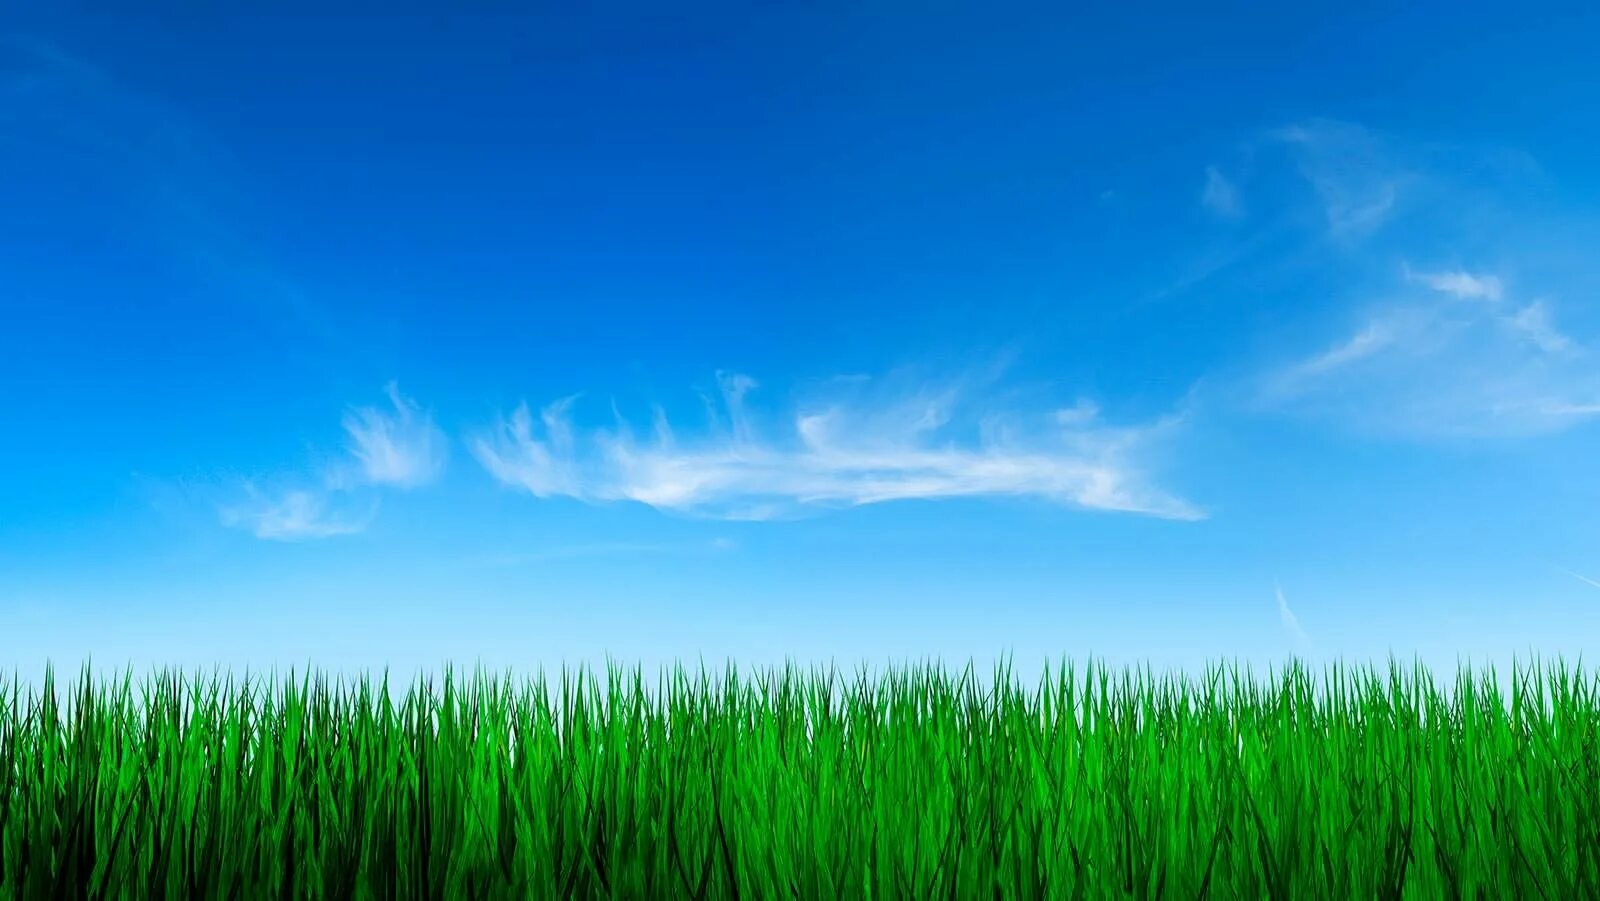 Картинки для сайта. Трава и небо. Фон трава и небо. Фон для сайта. Фоновое изображение.